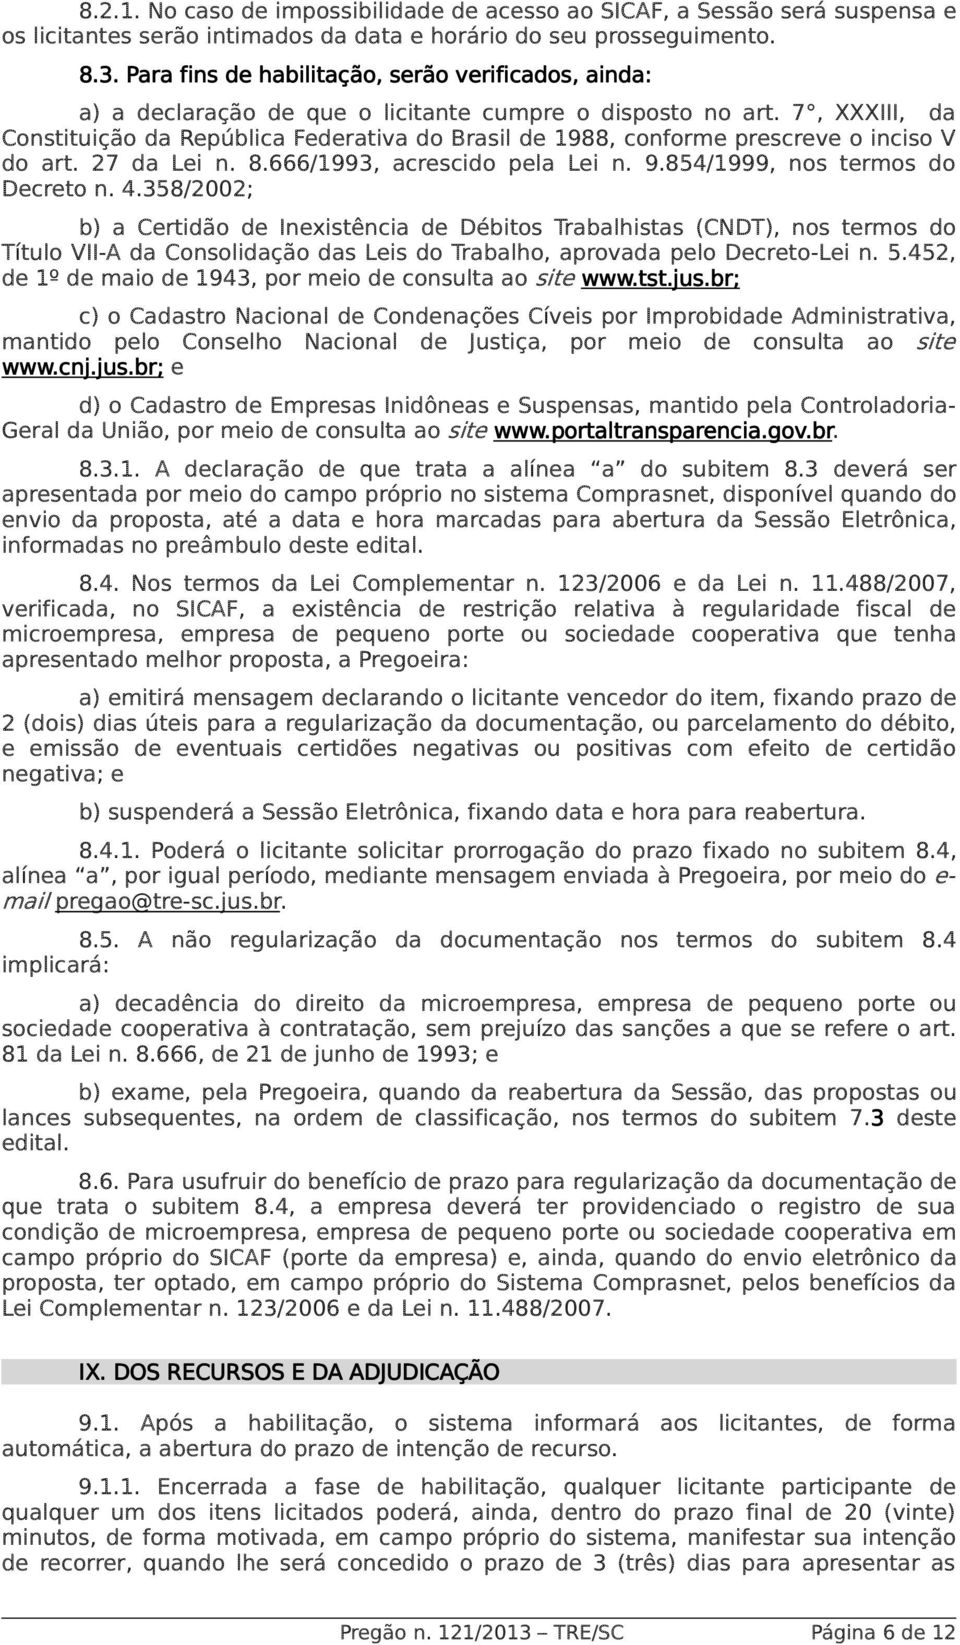 7, XXXIII, da Constituição da República Federativa do Brasil de 1988, conforme prescreve o inciso V do art. 27 da Lei n. 8.666/1993, acrescido pela Lei n. 9.854/1999, nos termos do Decreto n. 4.